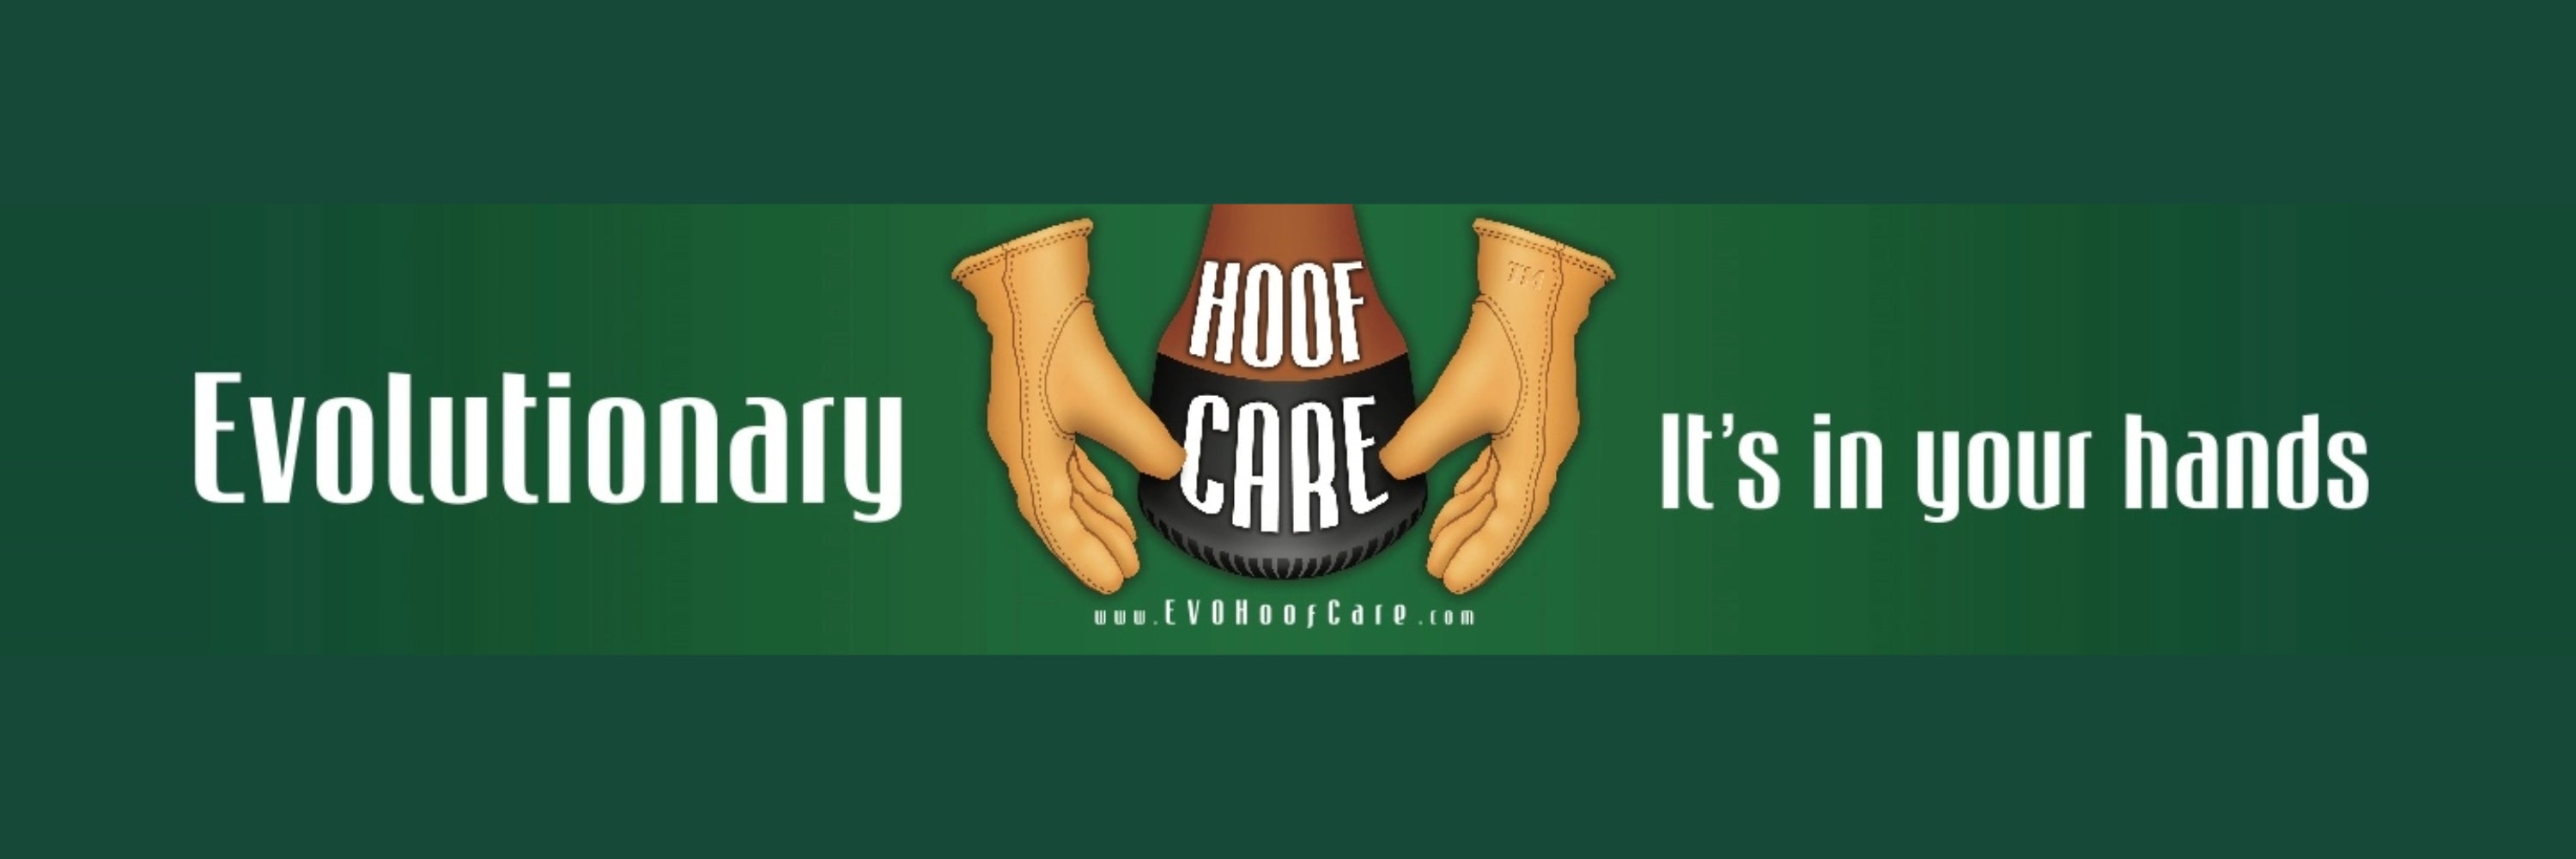 Evolutionary Hoof Care Company Logo